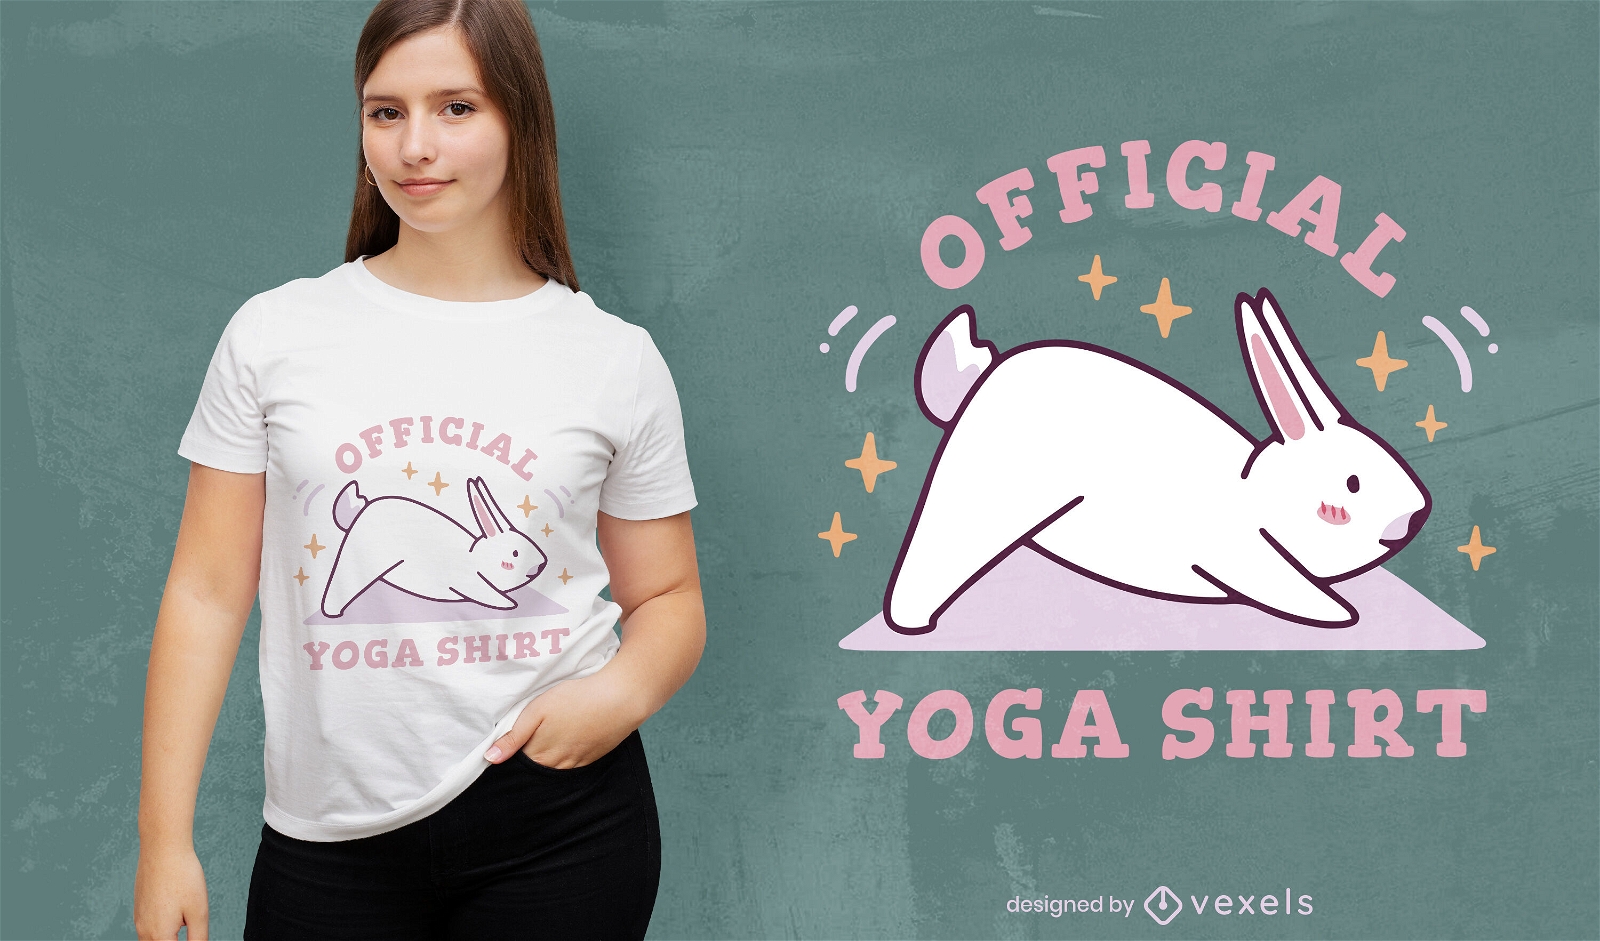 Yoga Shirt H?schen T-Shirt Design